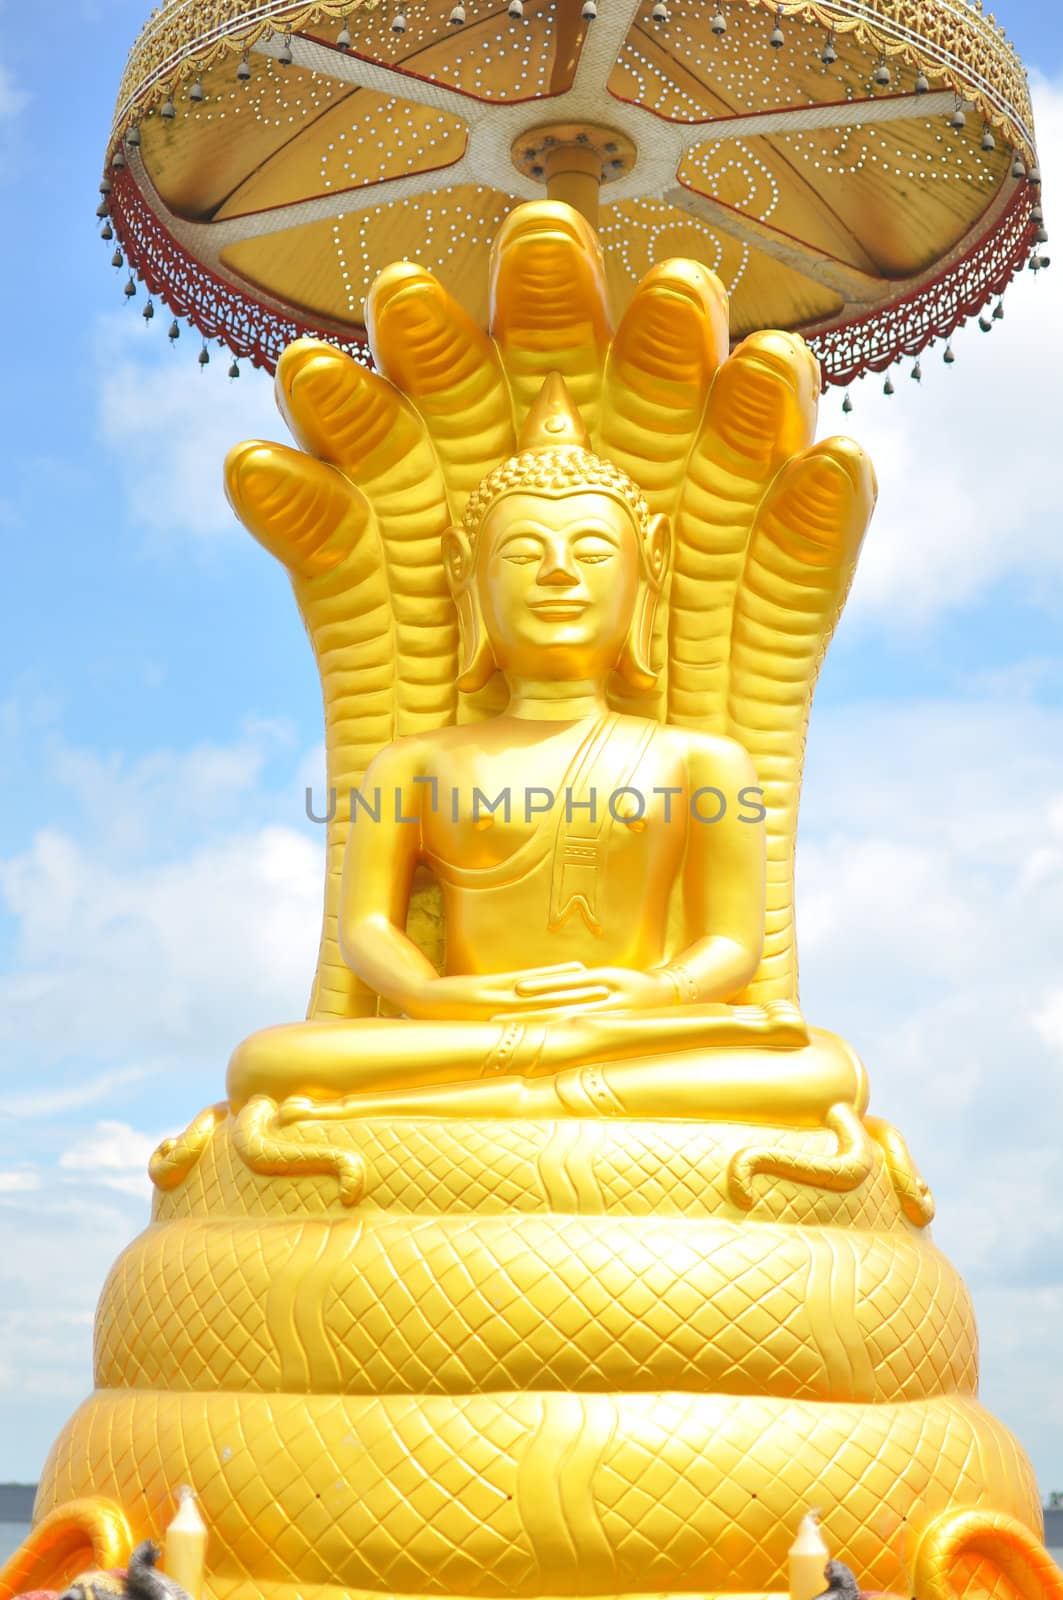 Buddha statue in Thailand